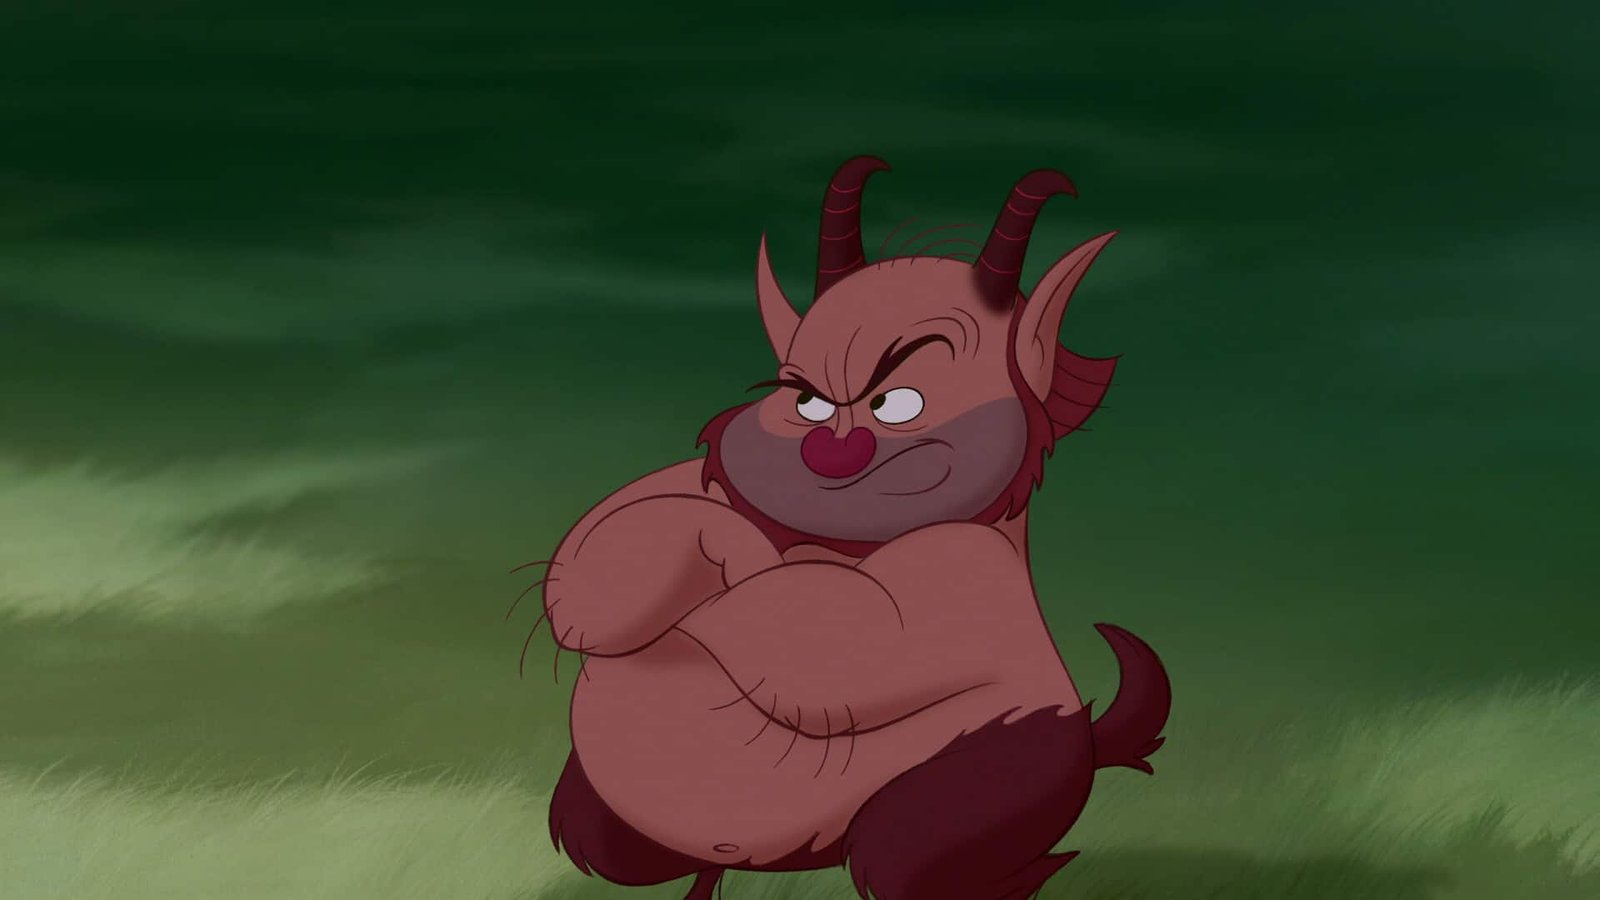 Image animée d'un personnage dodu et diabolique avec un sourire malicieux, une peau rouge foncé et de petites cornes, debout, les bras croisés sur un fond vert, ressemblant à des personnages de Disney.